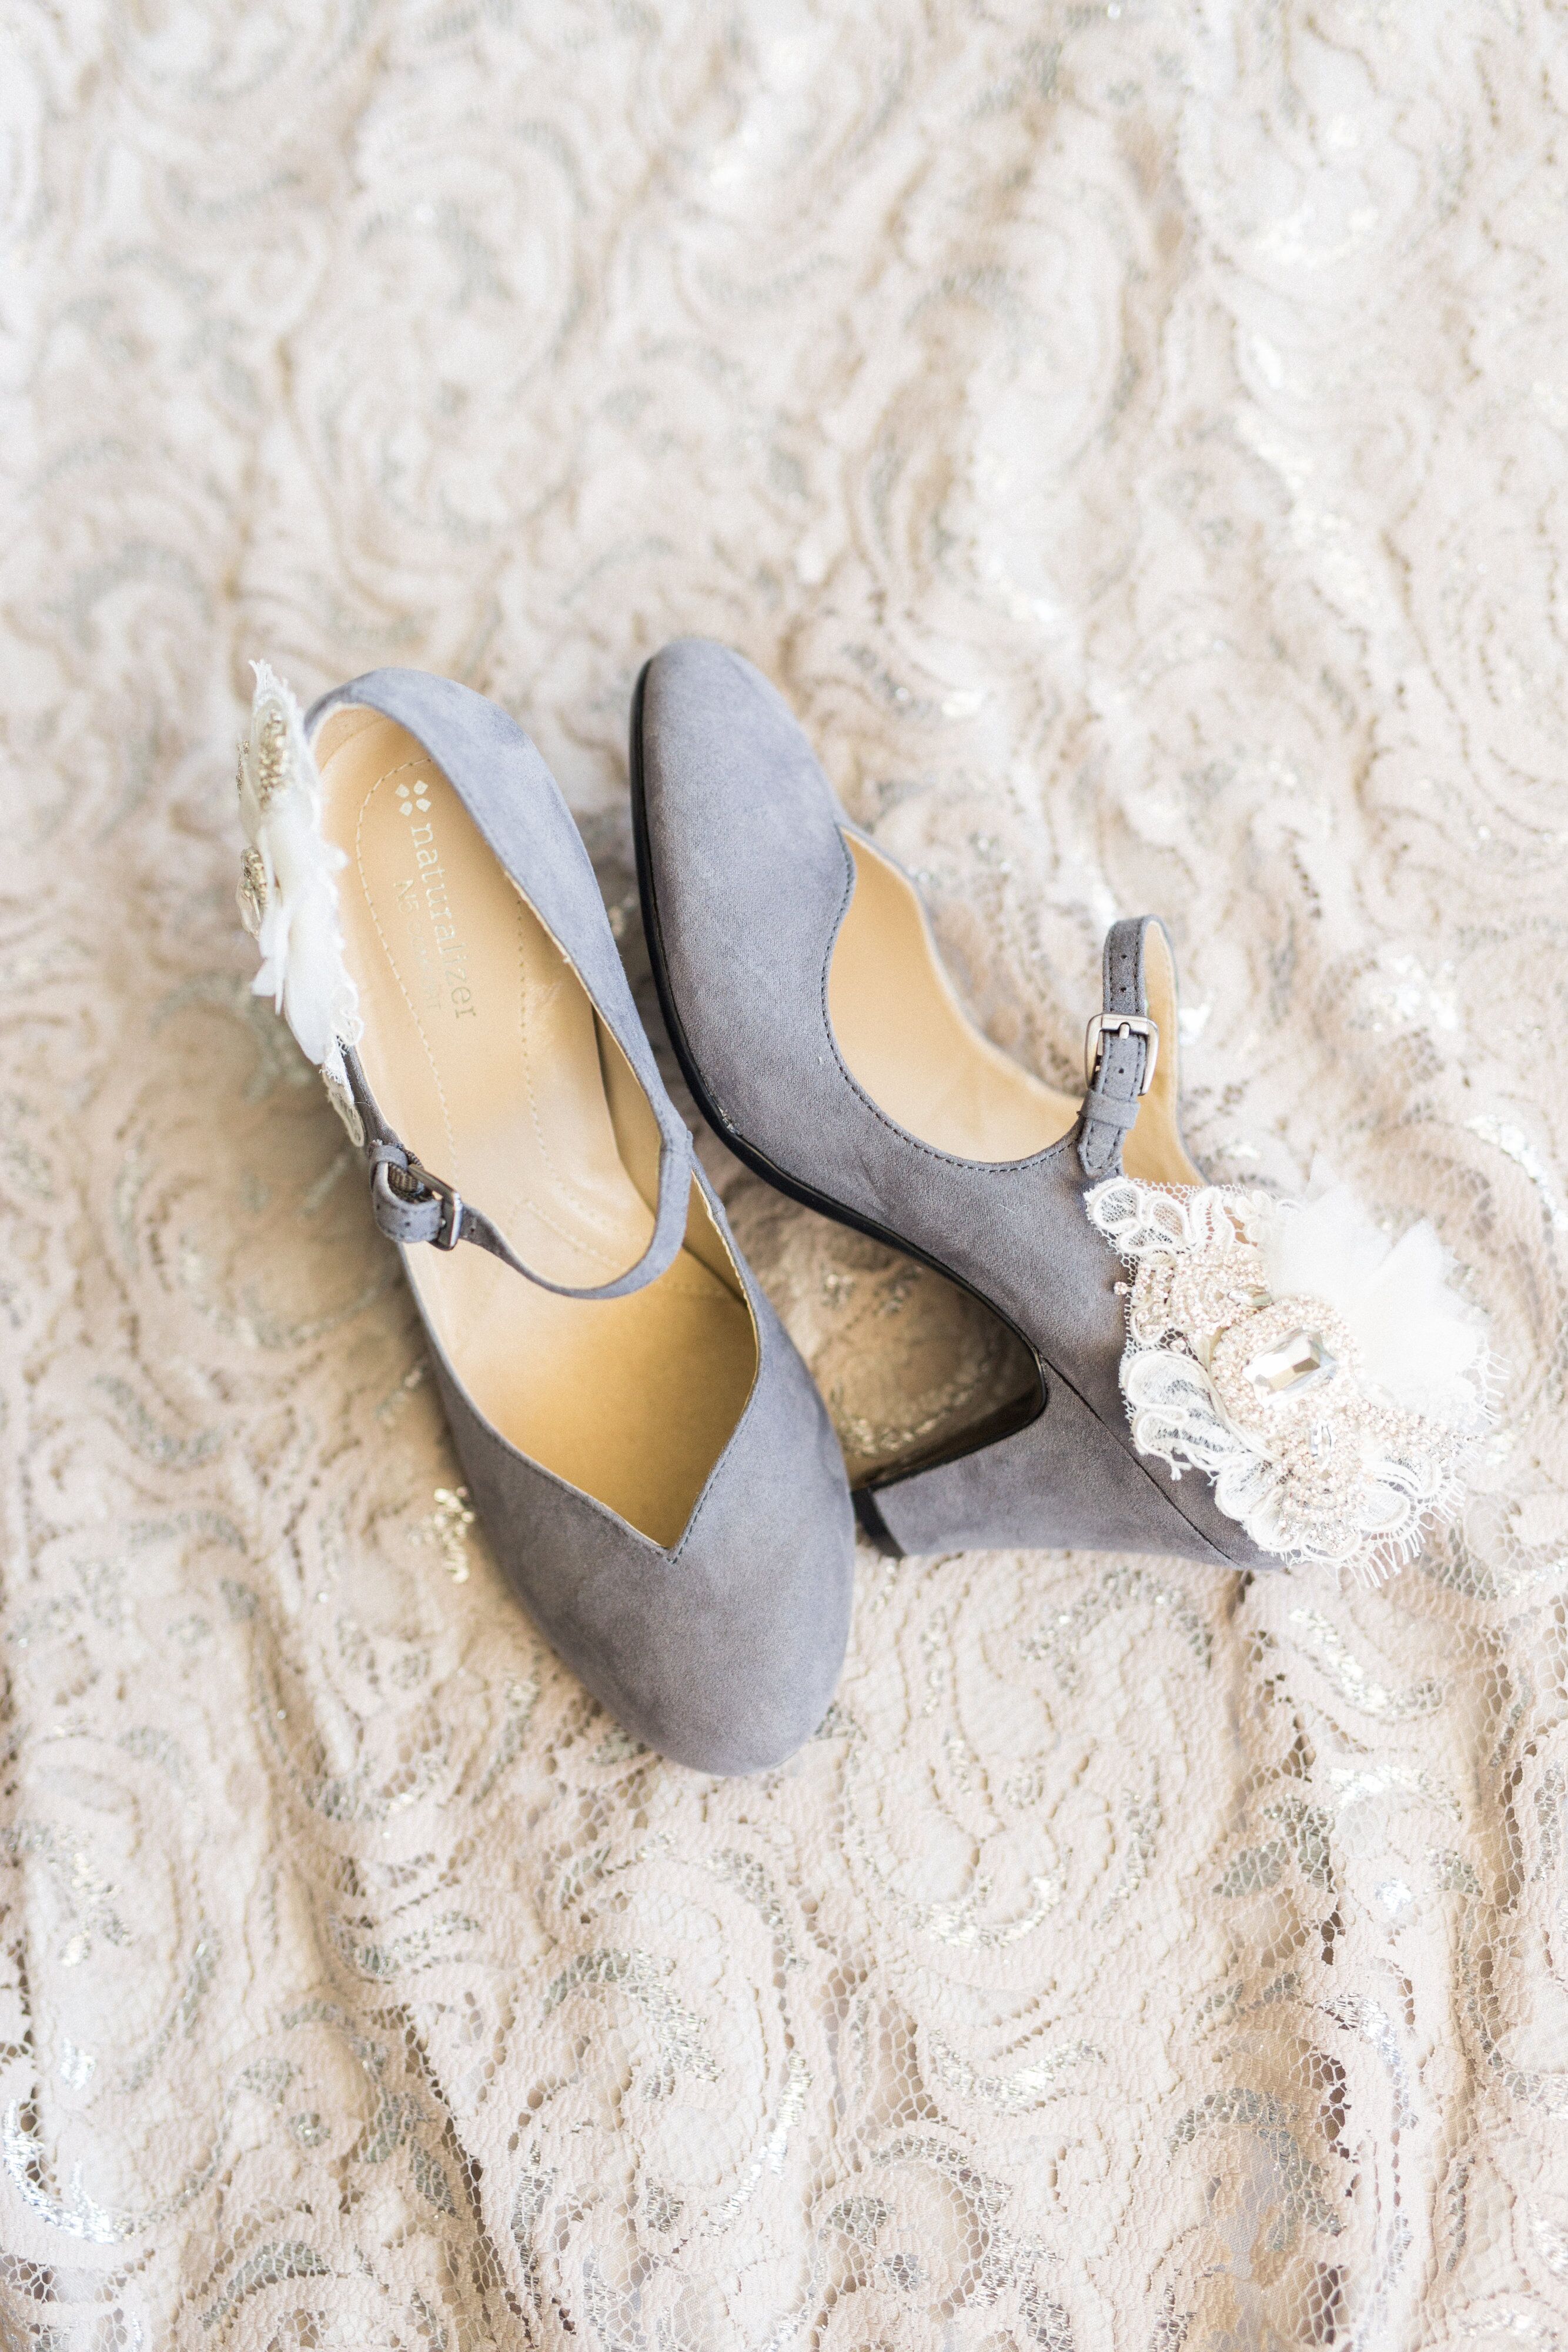 lavender wedding shoes for bride